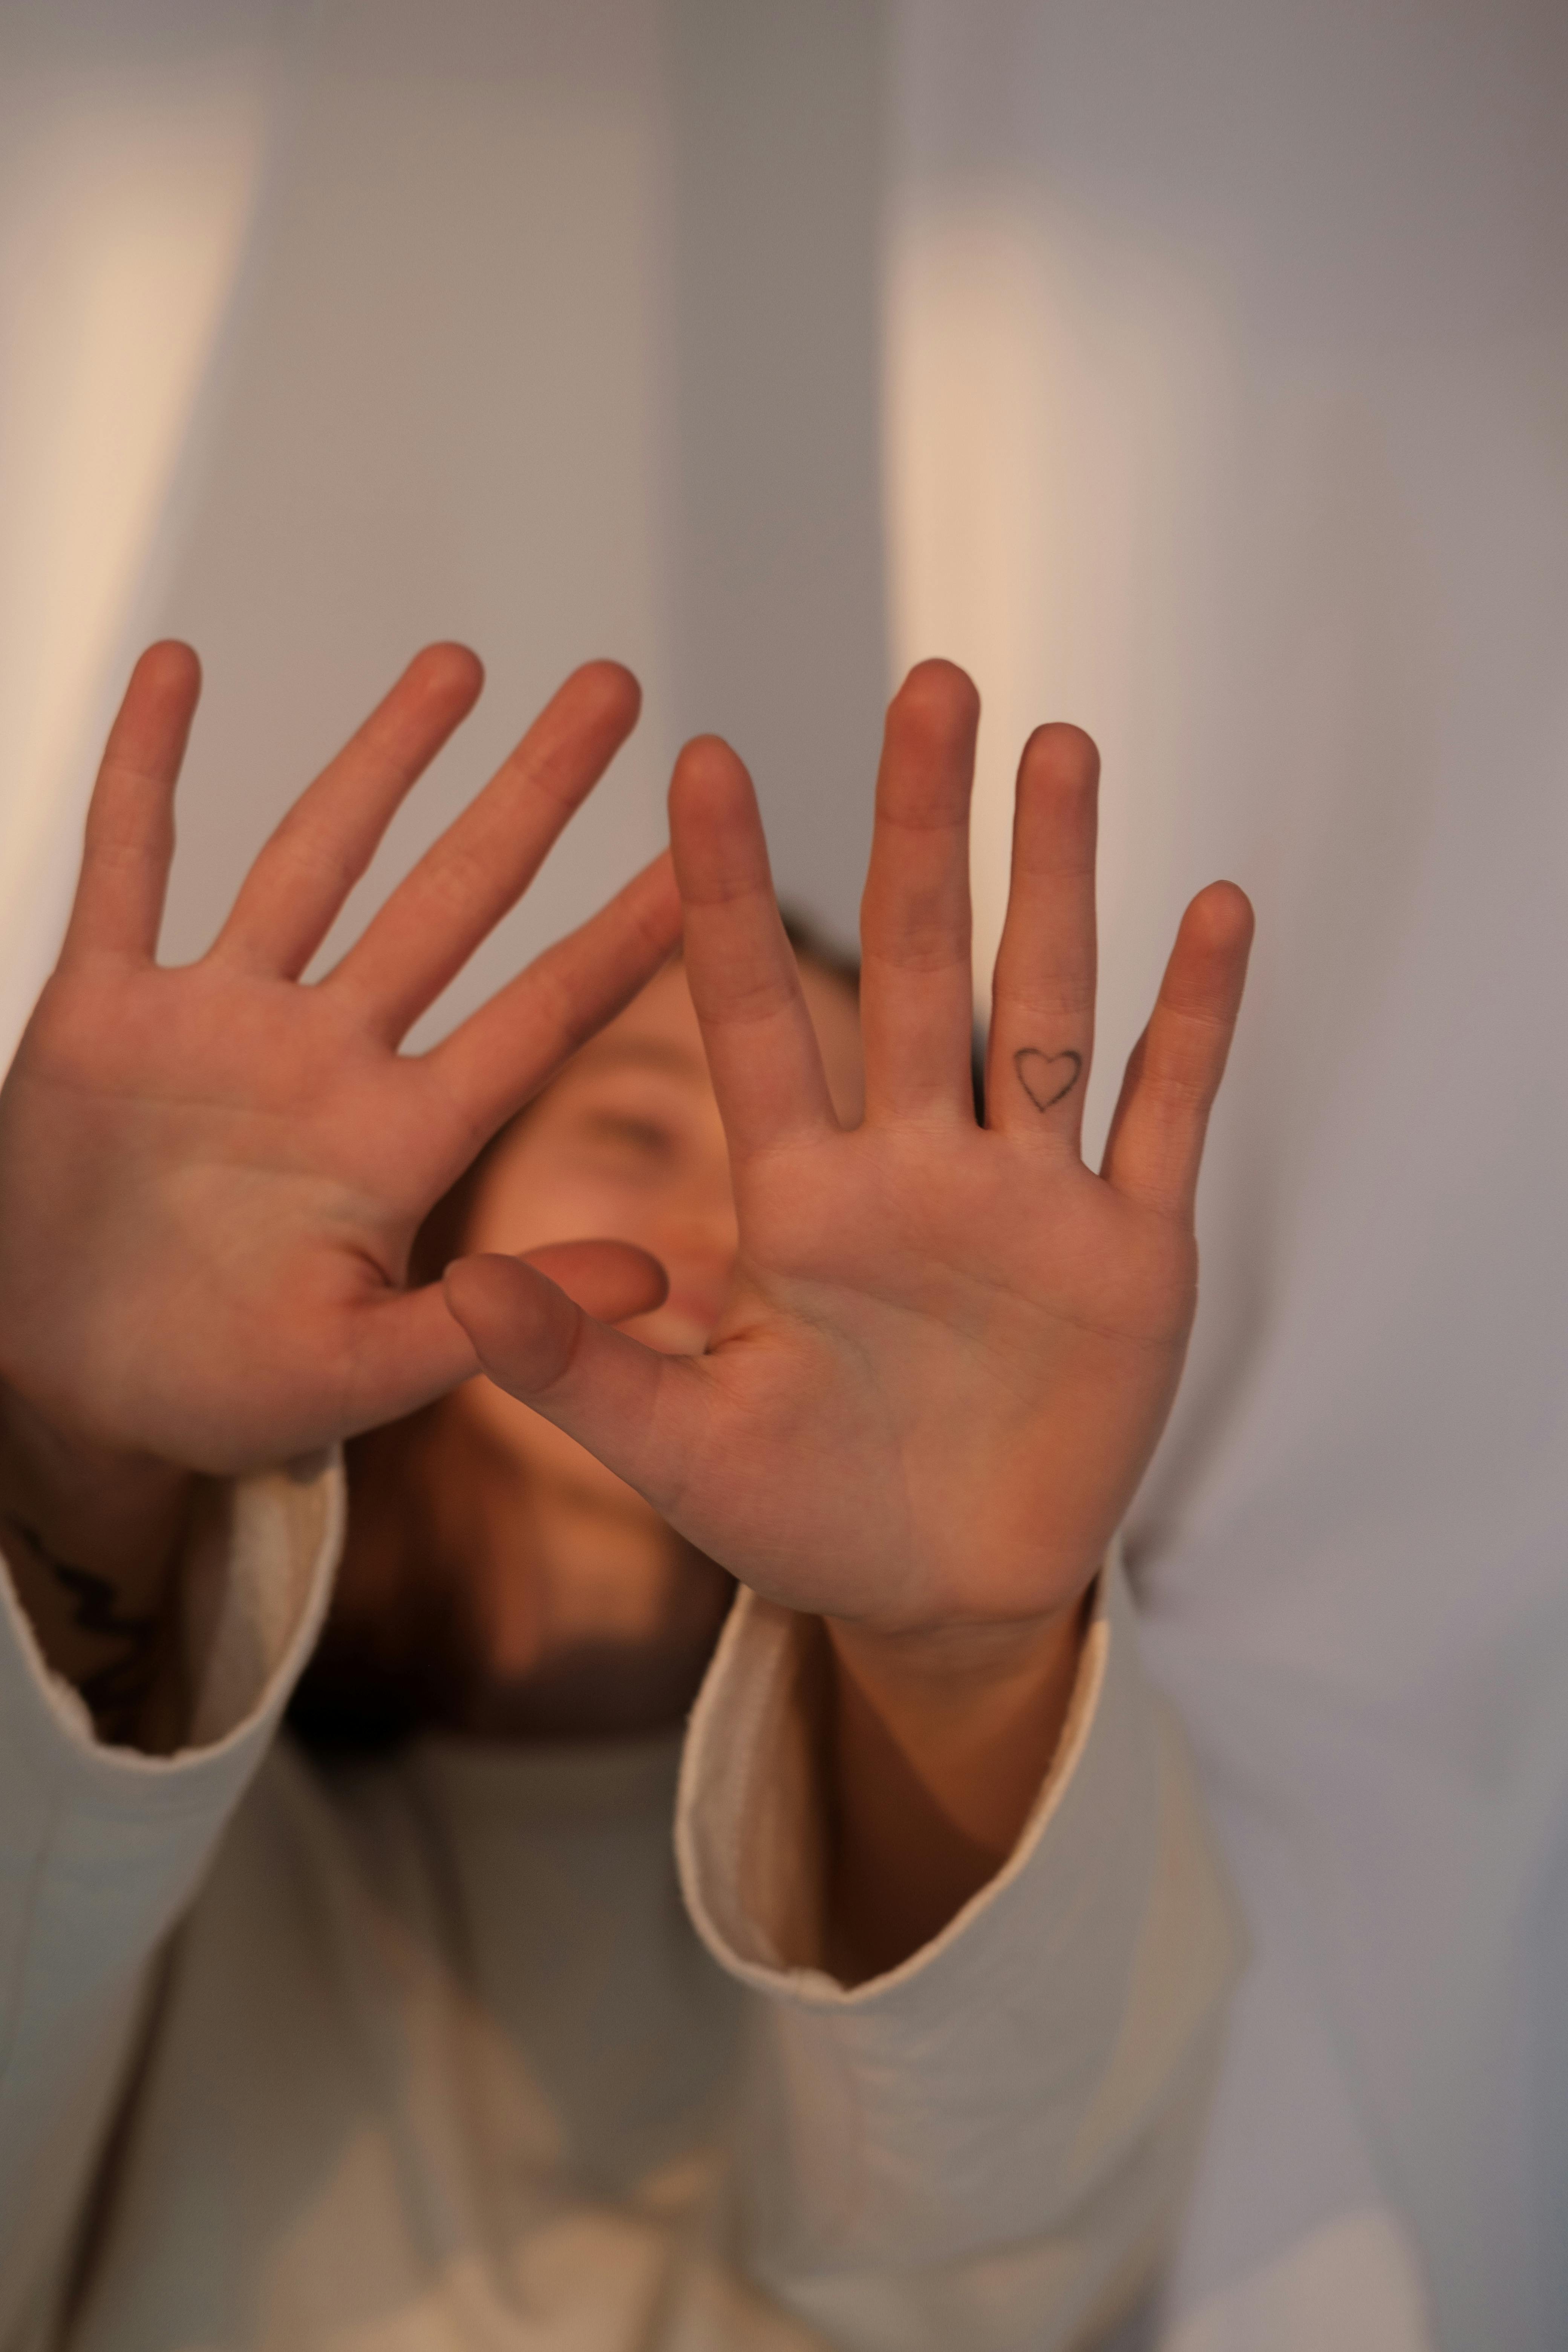 Eine Frau, die ihre Hände aus Protest über ihr Gesicht hält | Quelle: Pexels